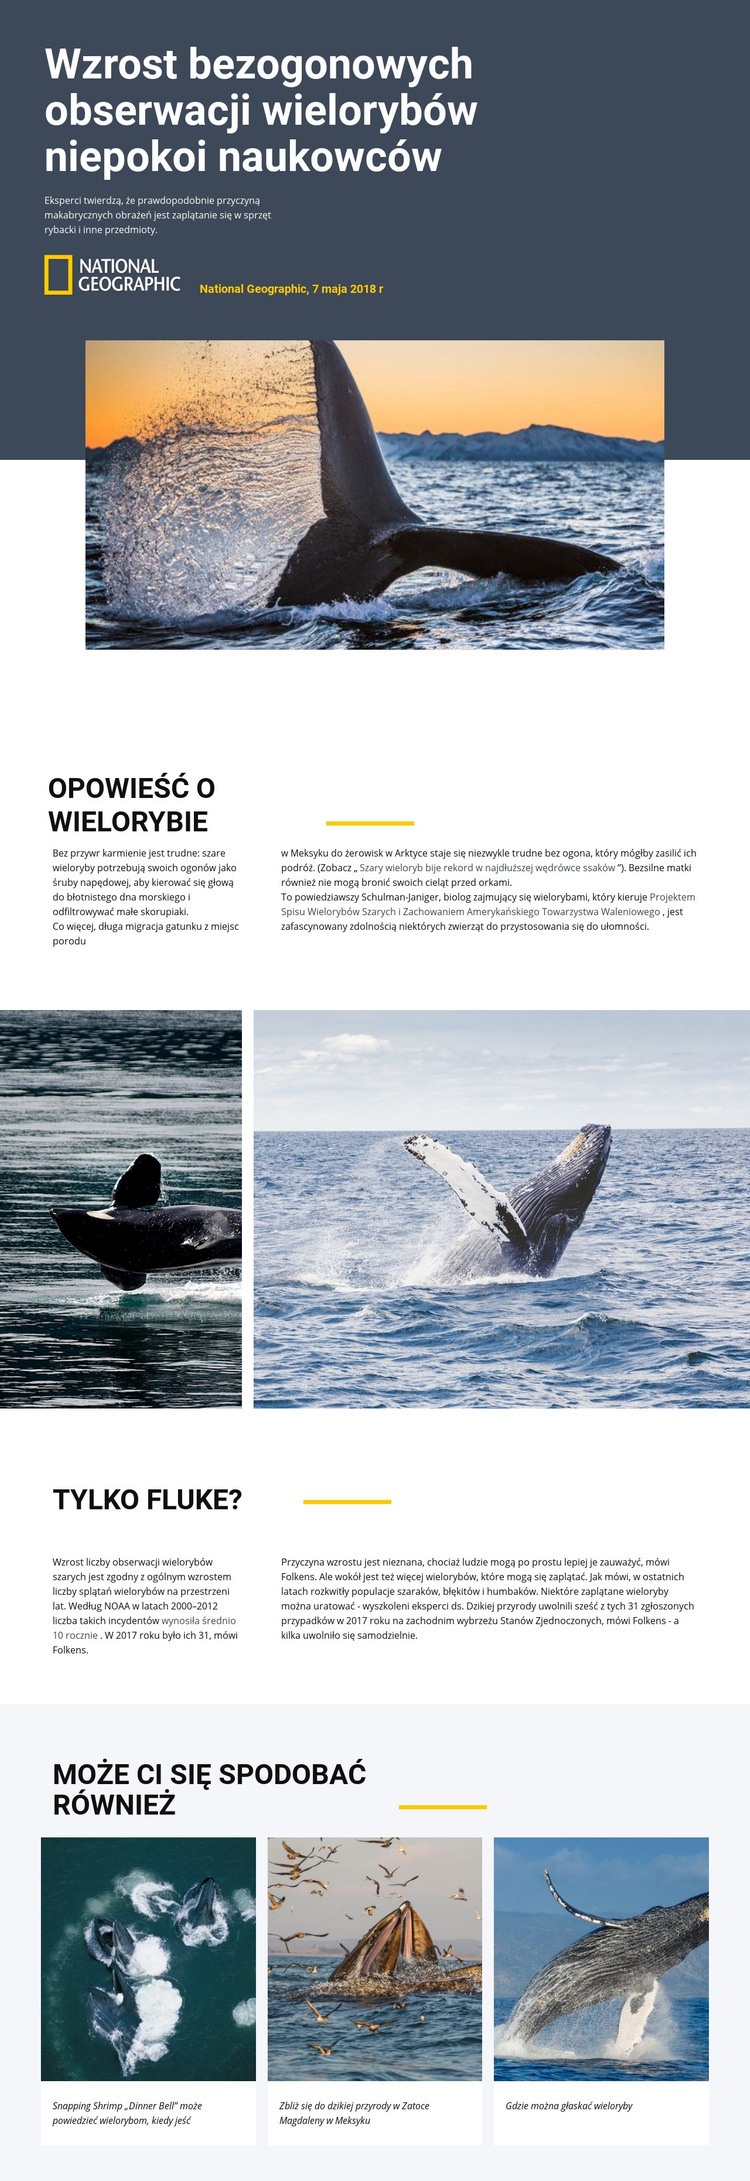 Centrum obserwacji wielorybów Szablon jednej strony